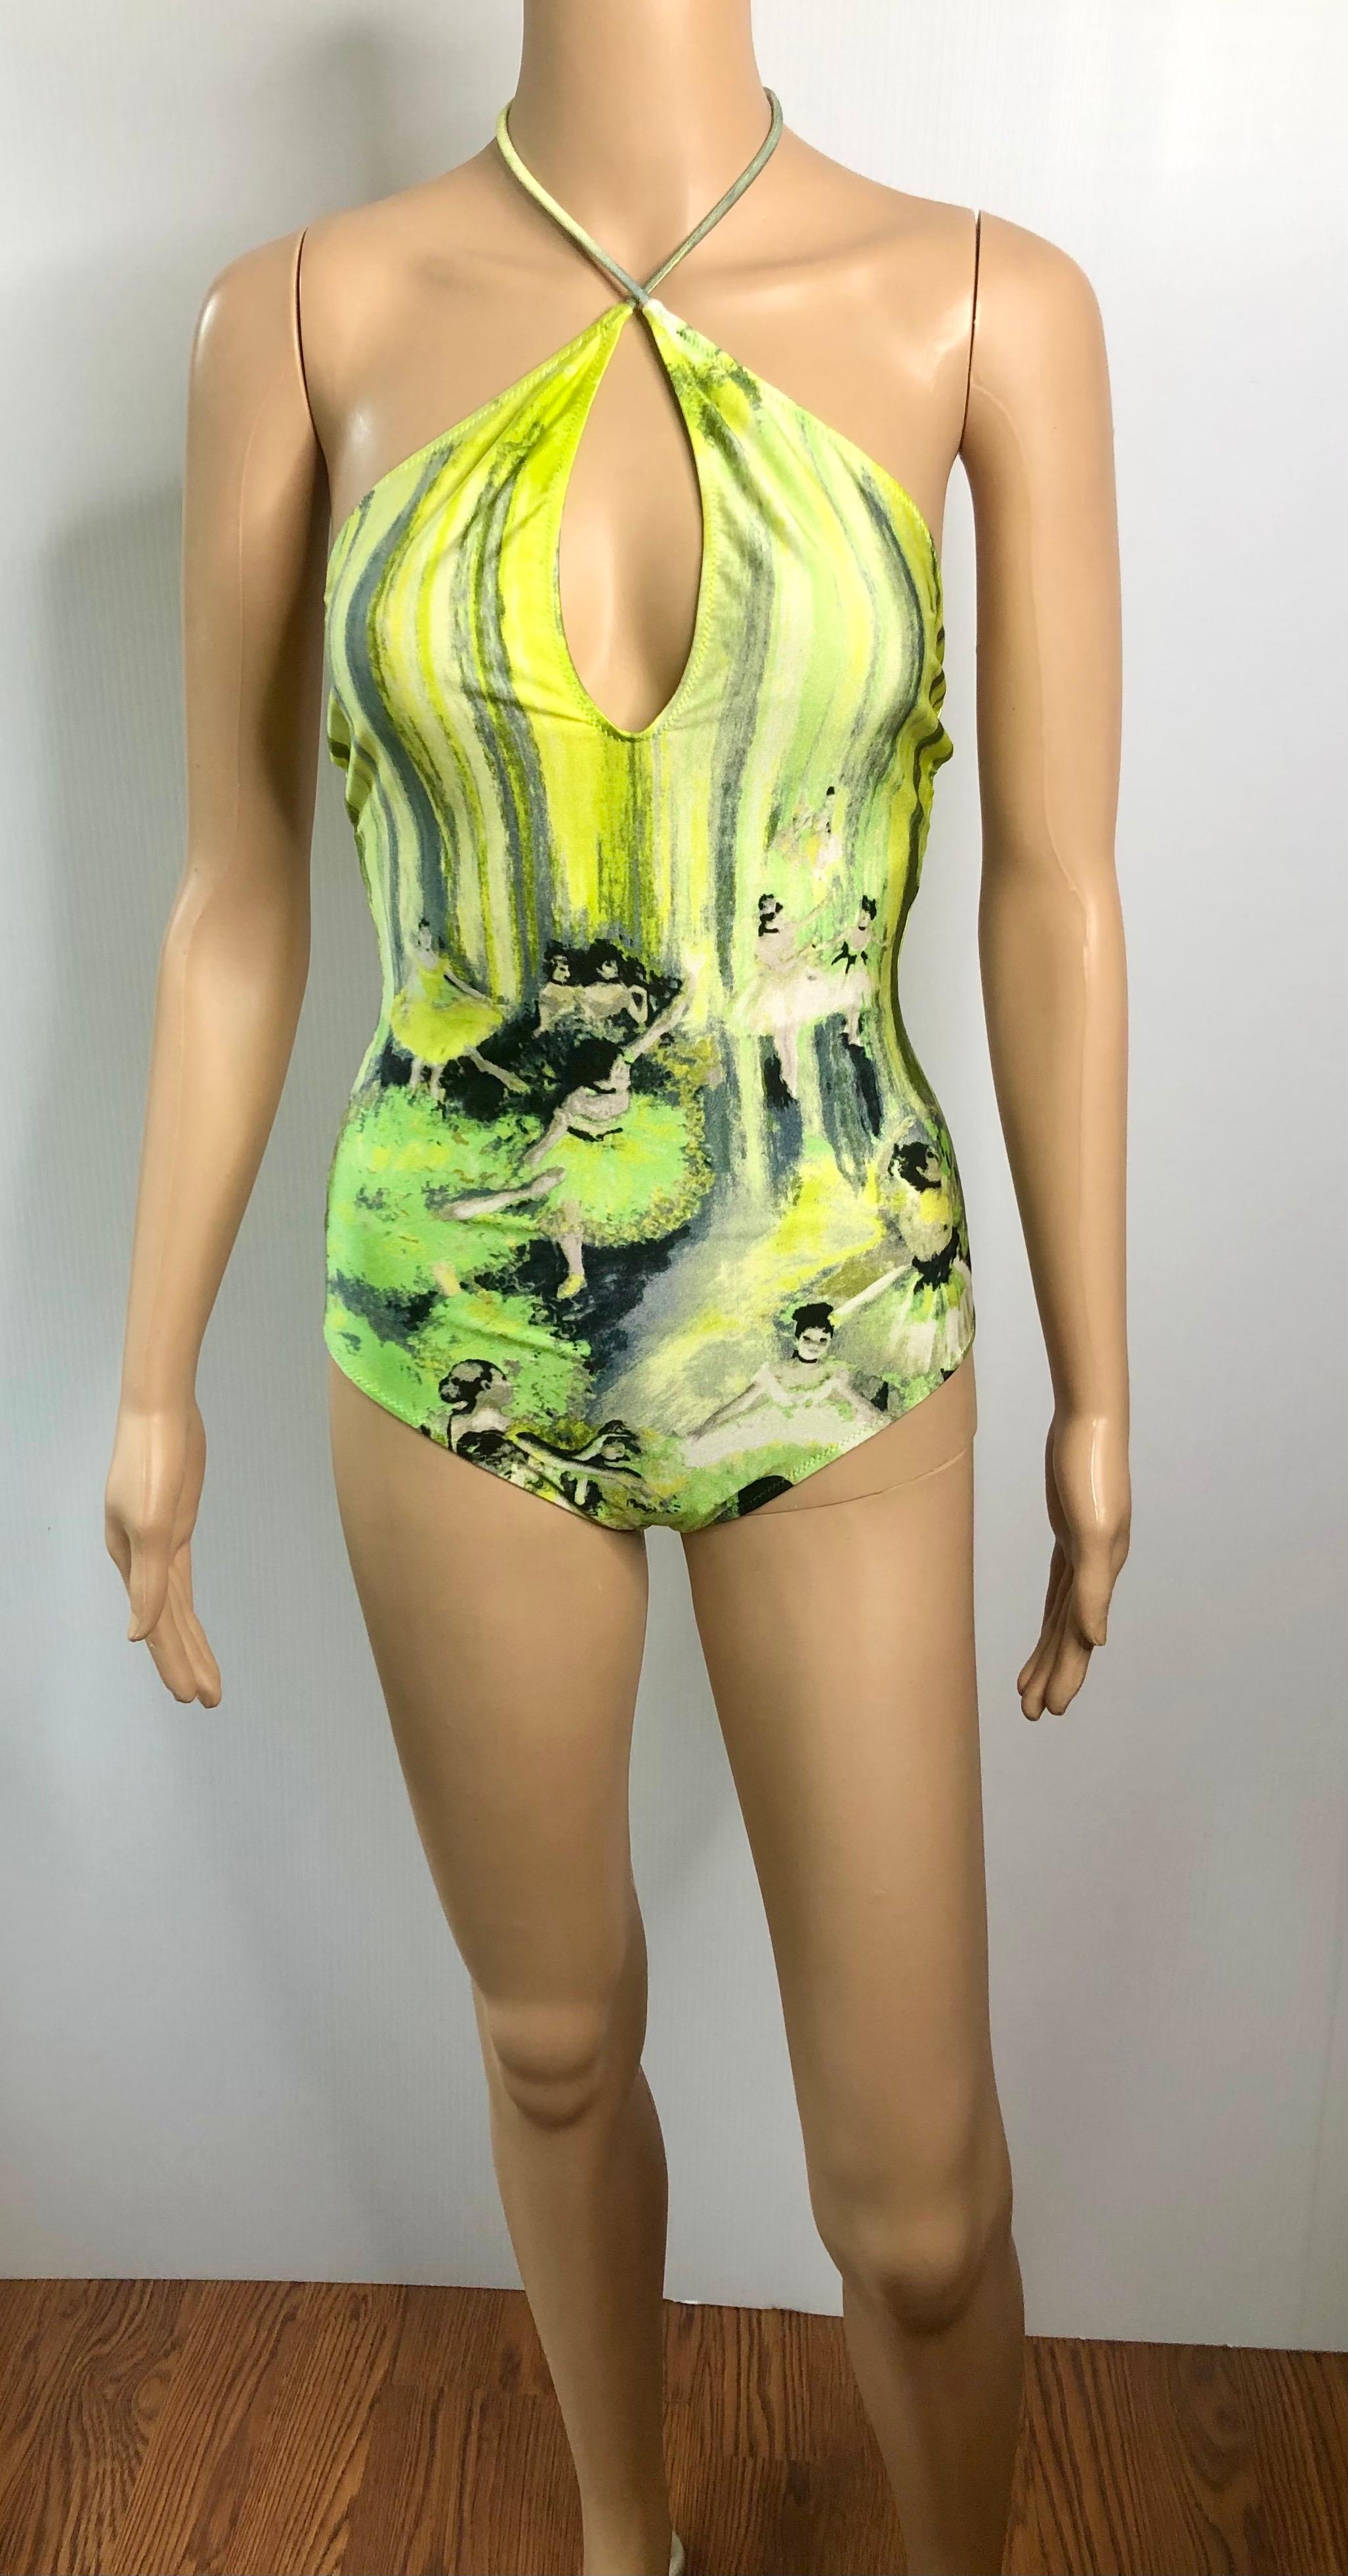 Green Jean Paul Gaultier Soleil S/S 2004 Degas Ballet Bodysuit Swimwear Swimsuit For Sale